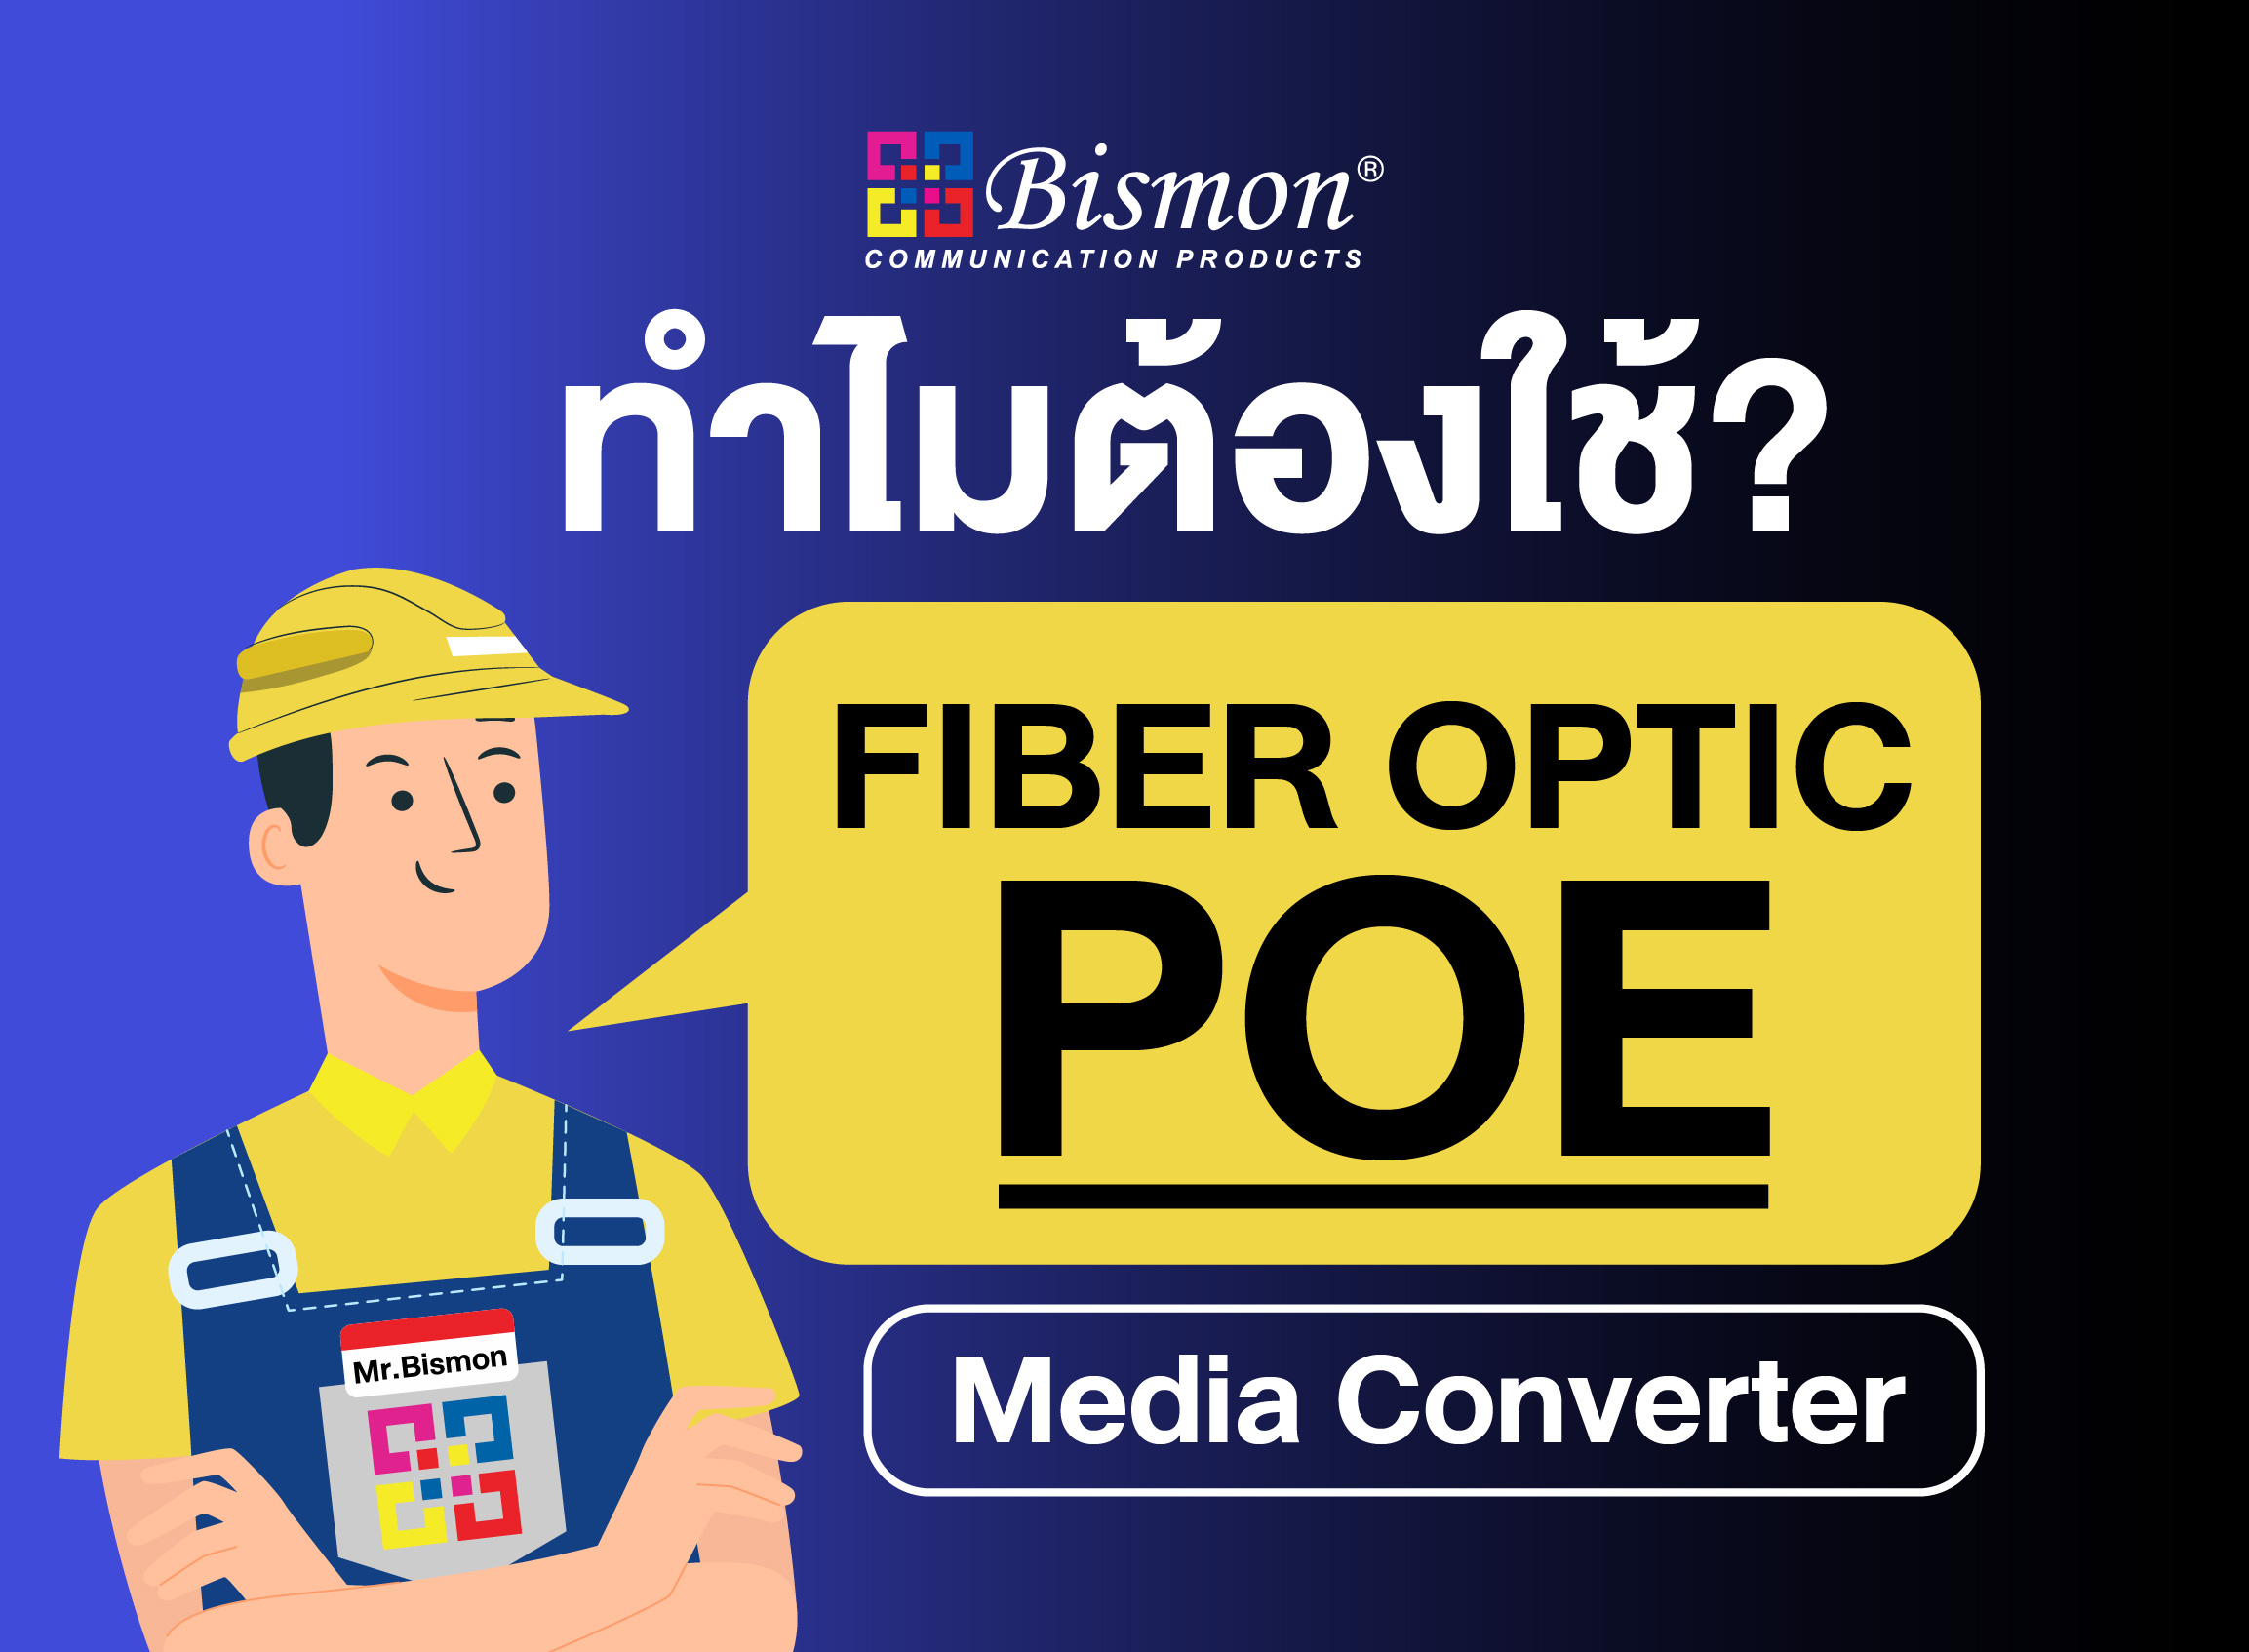 ทำไมต้องใช้ Fiber optic POE?